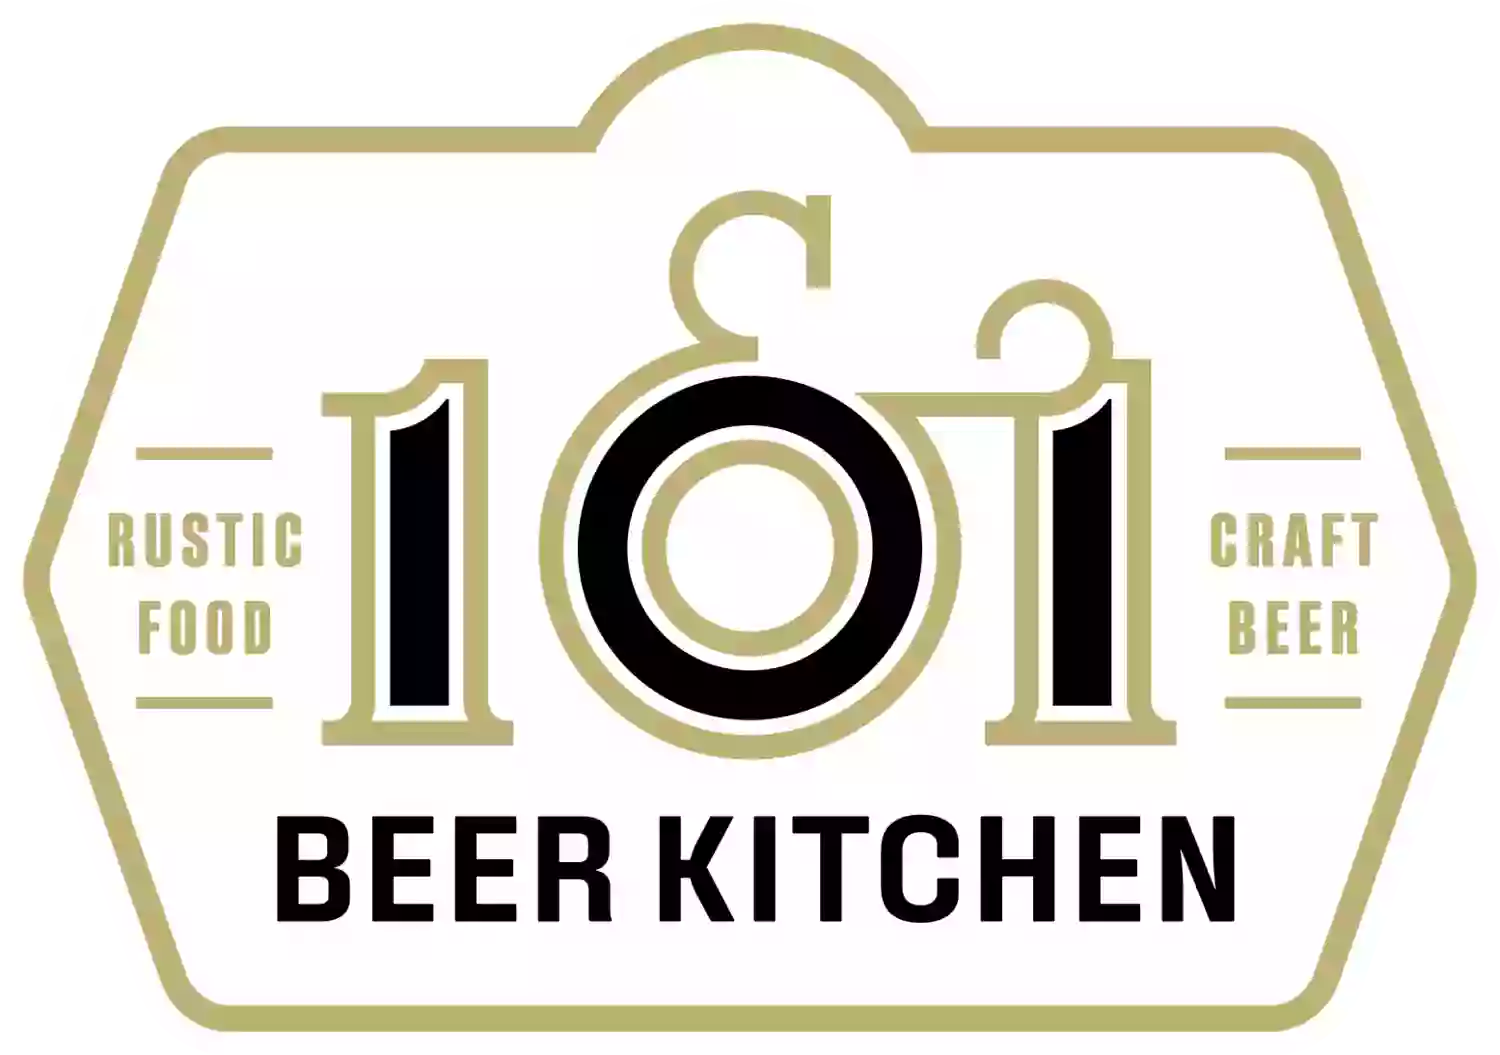 101 Beer Kitchen